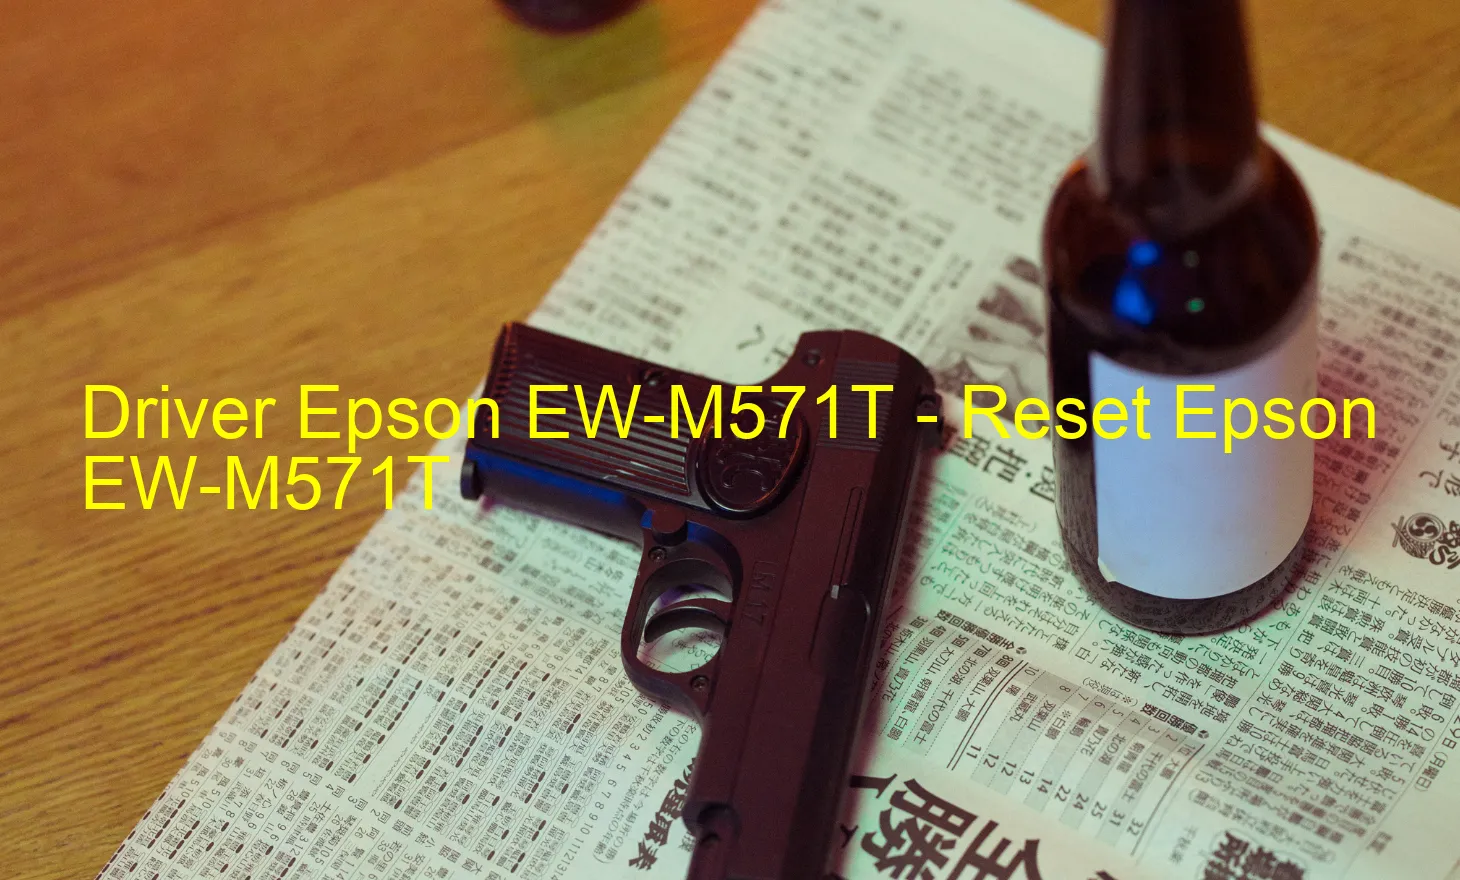 Epson EW-M571Tのドライバー、Epson EW-M571Tのリセットソフトウェア